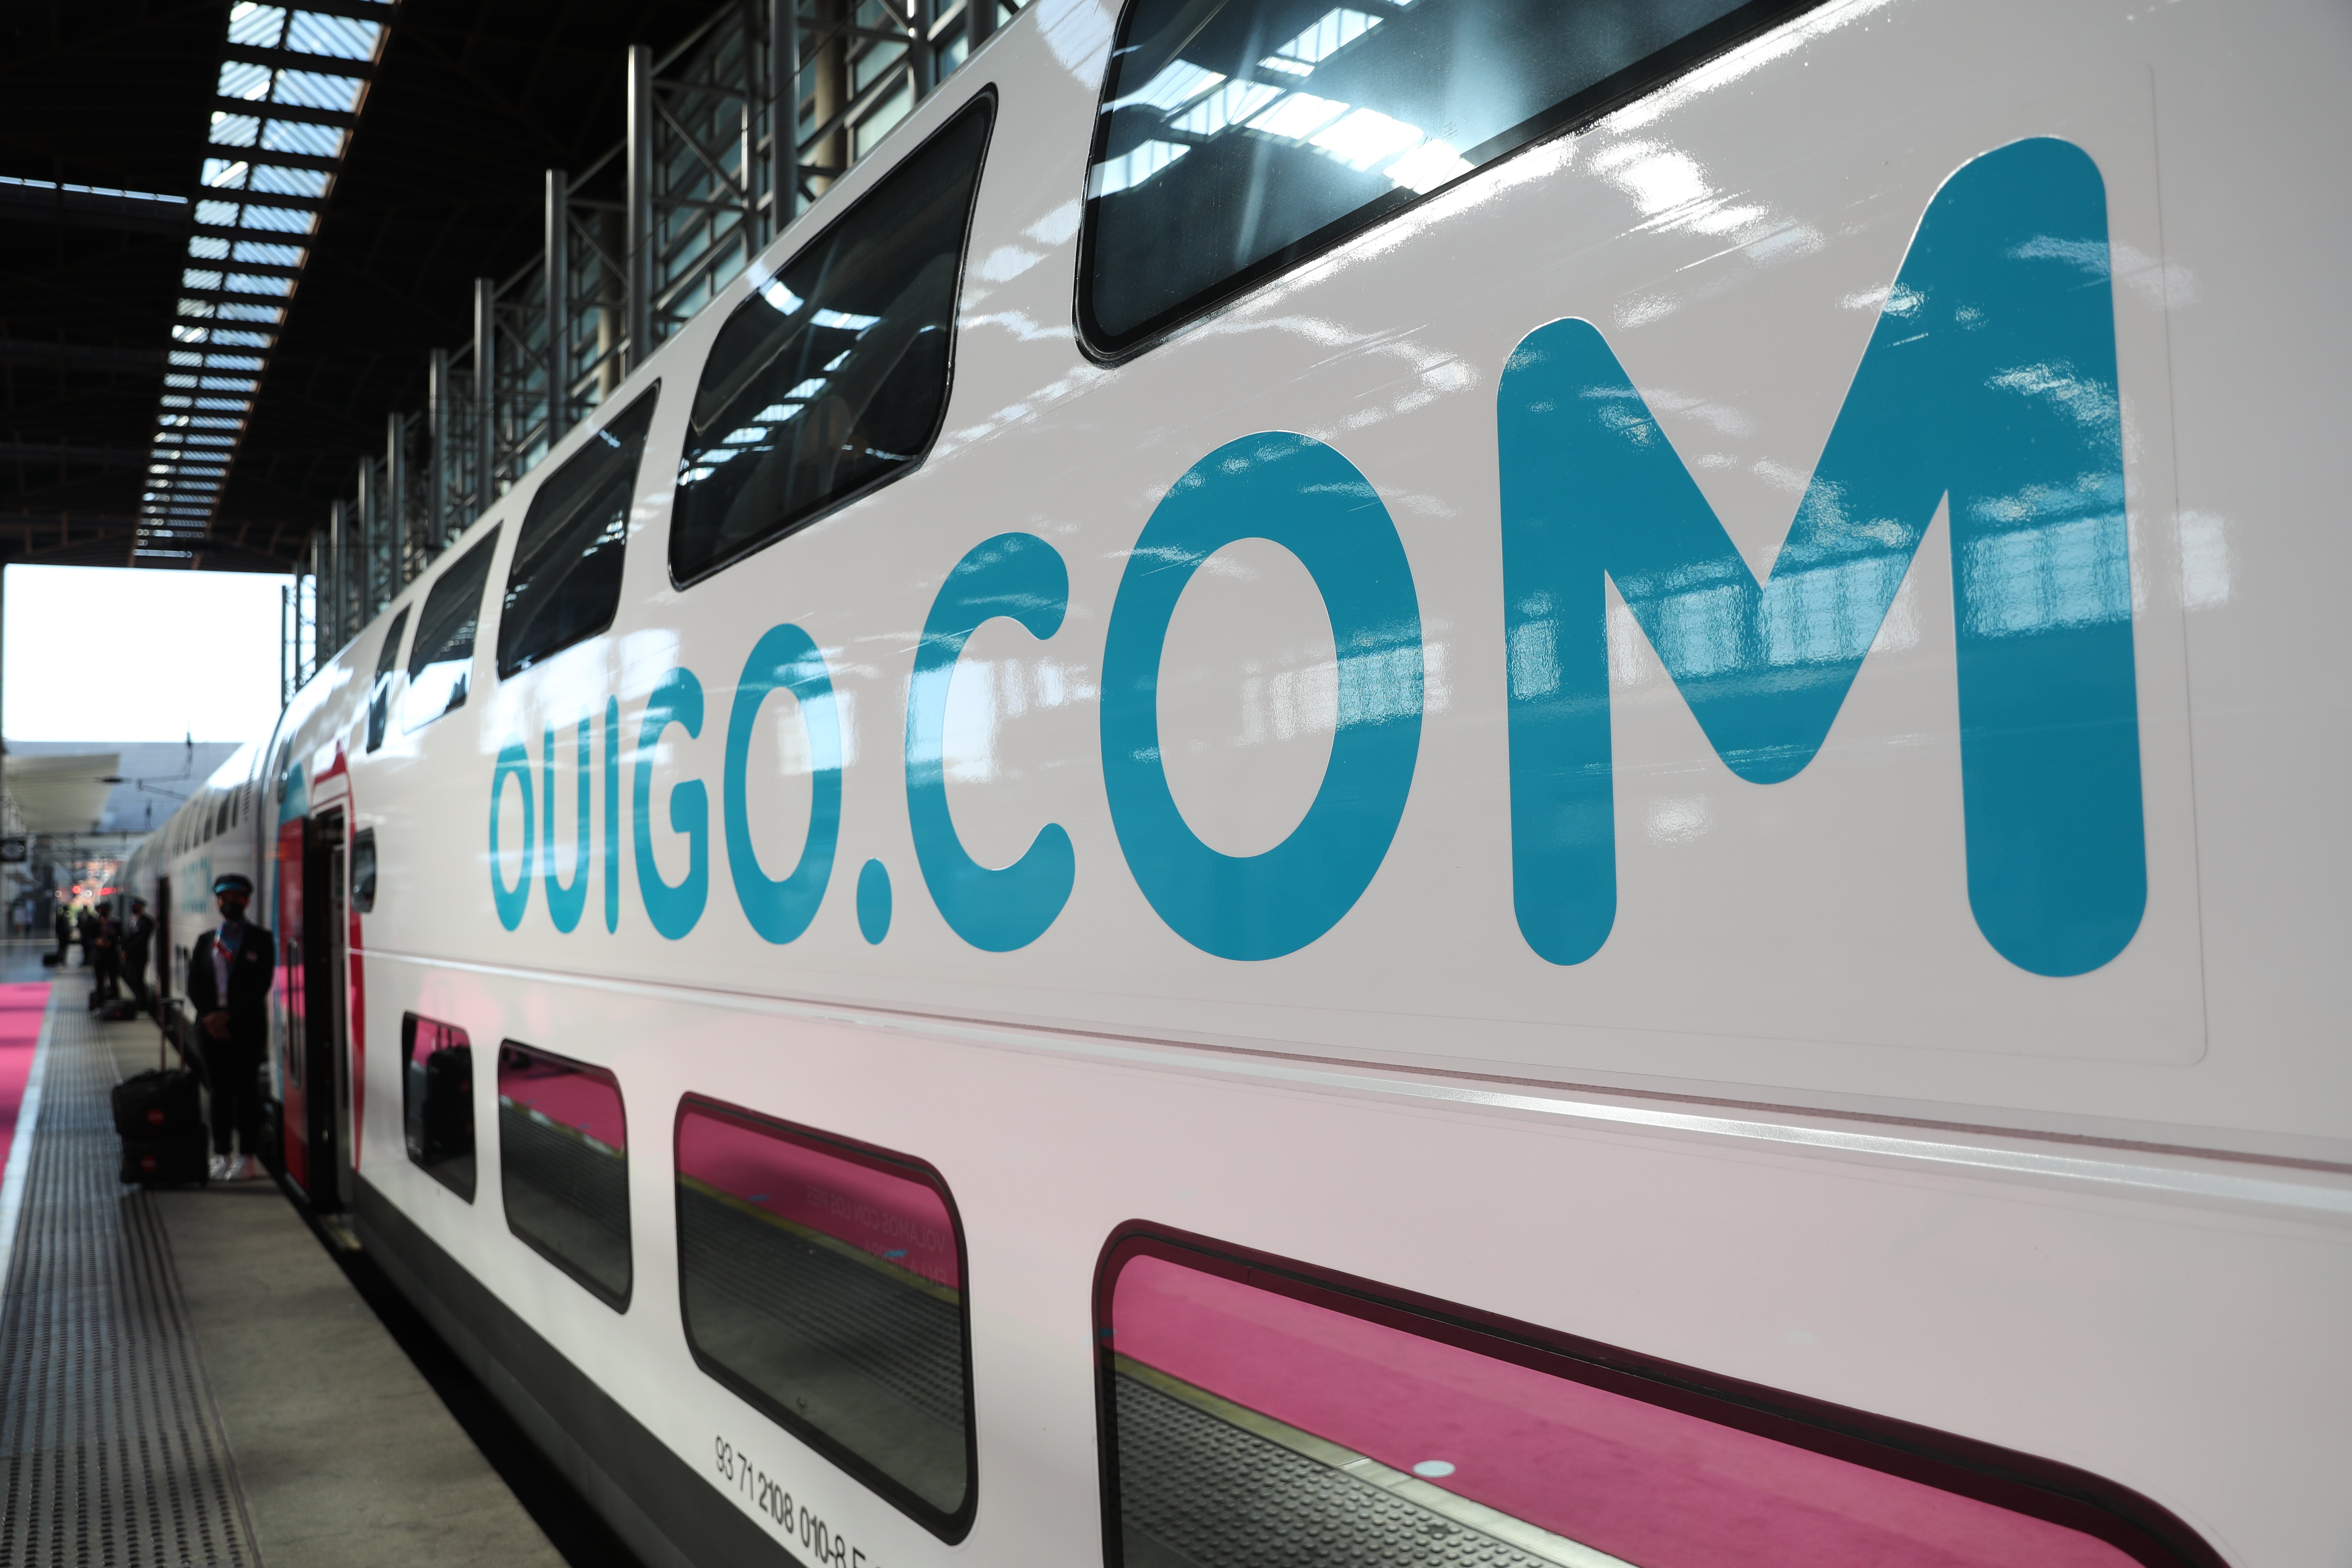 Ouigo anuncia la venda de bitllets de tren a 9 euros a partir de l'1 de març